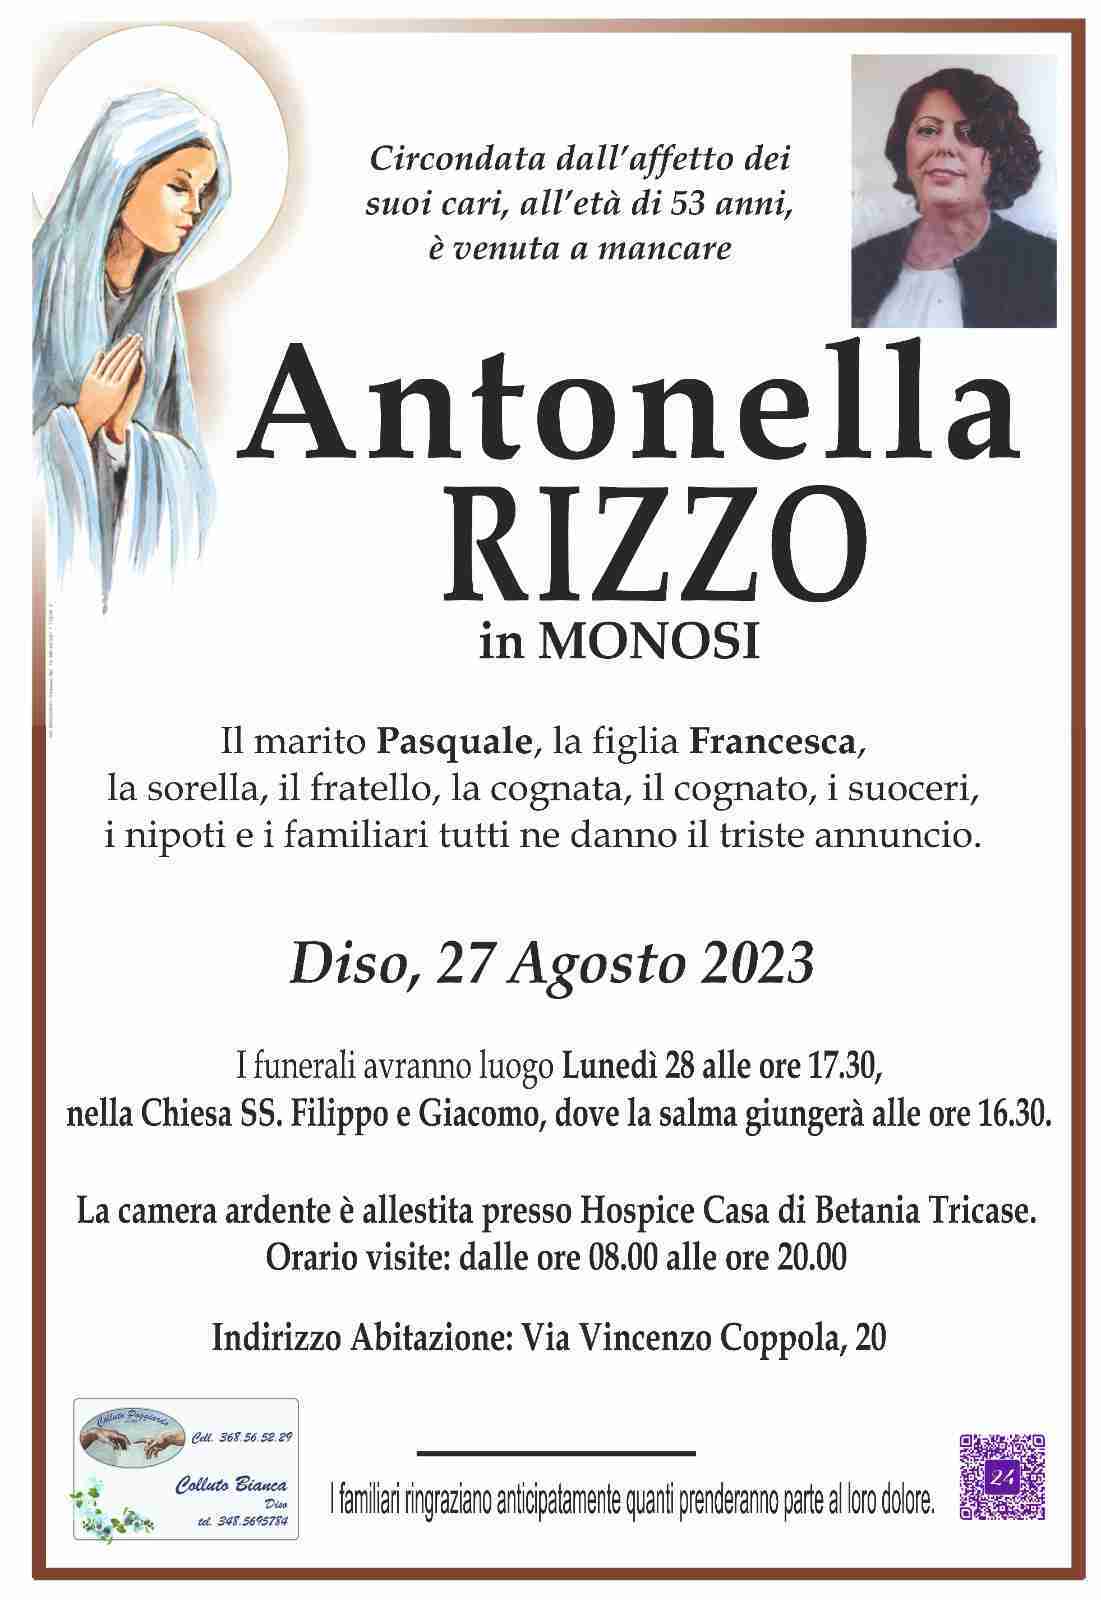 Antonella Rizzo